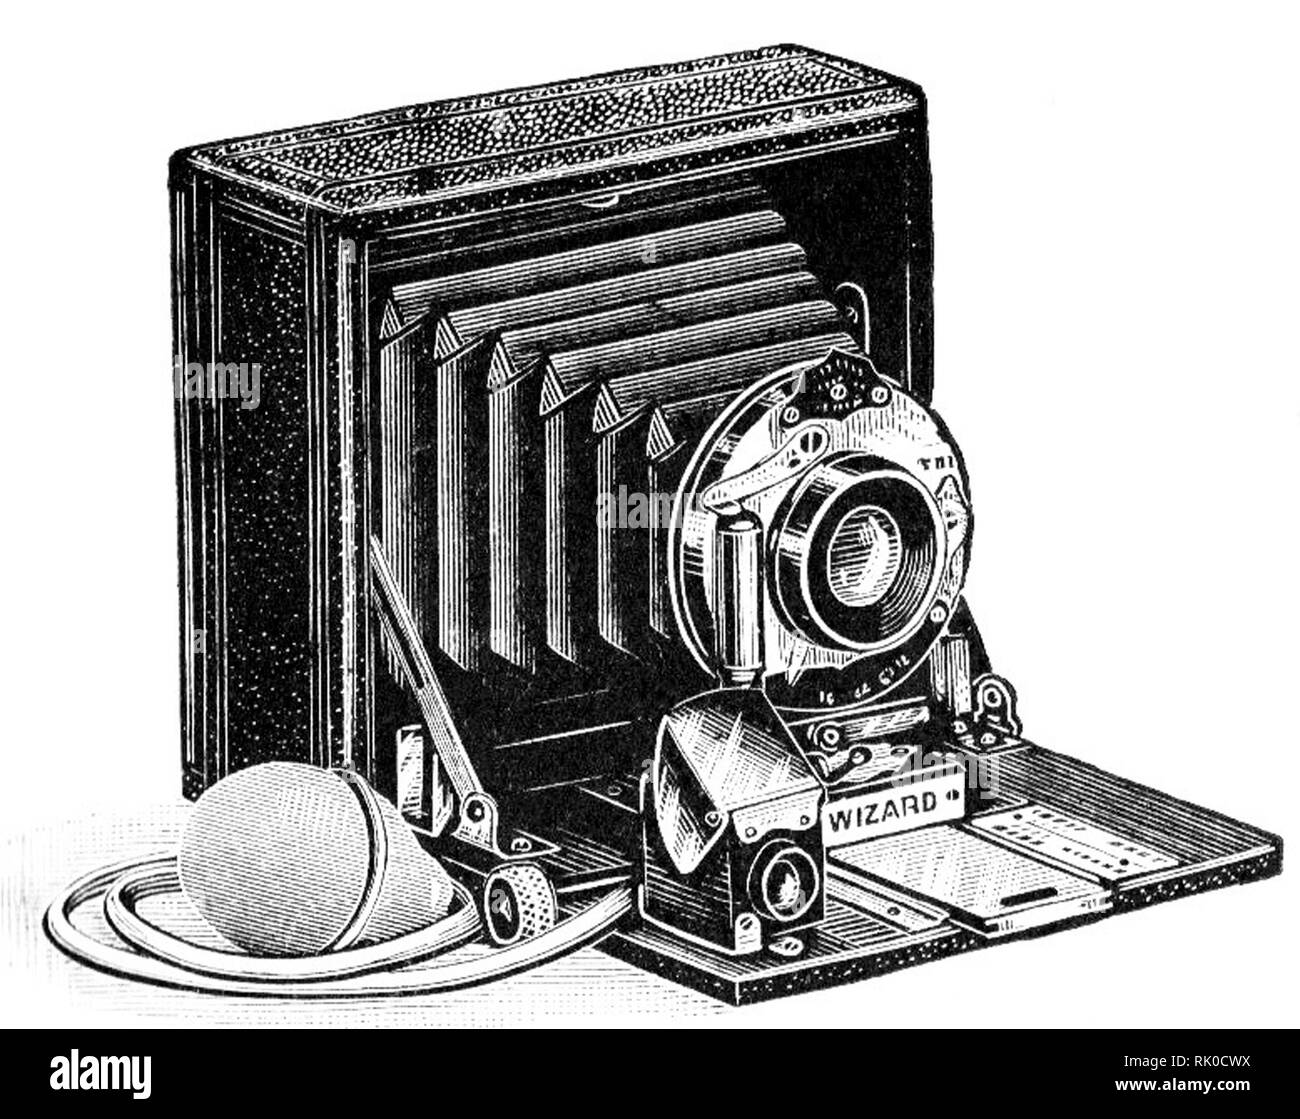 Jahrgang alte fotografische Platte Kamera - dies war der Assistent genannt. Diese antike Kameras verwendet, Glasplatten, die negativen zu produzieren. Stockfoto